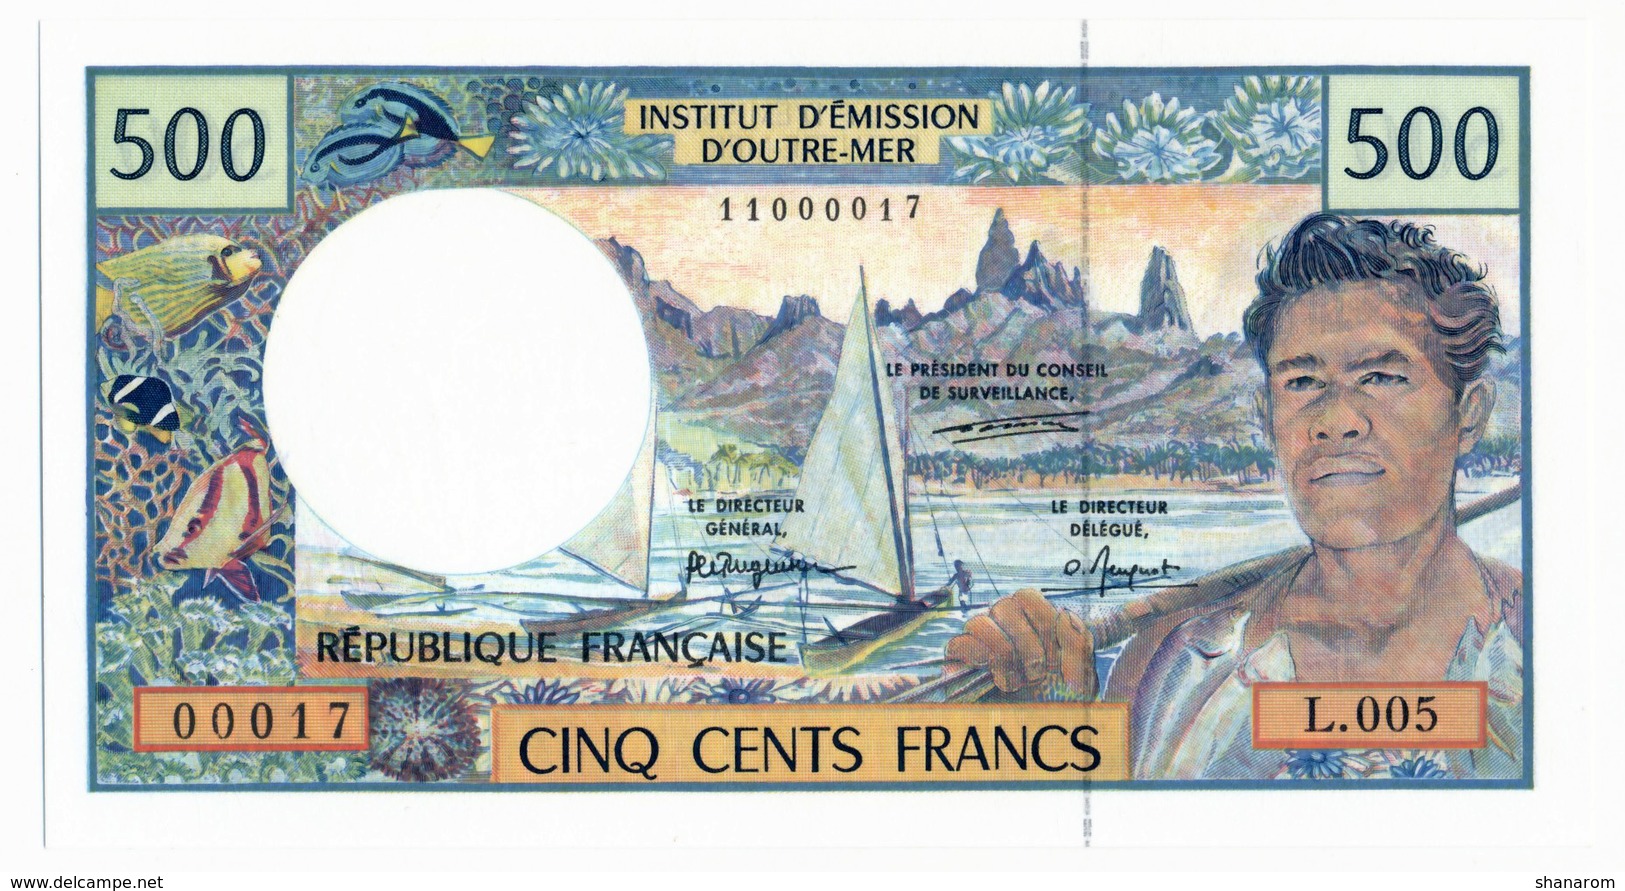 INSTITUT D'EMISSION D'OUTRE MER // Cinq Cent Francs // UNC - Other - Oceania